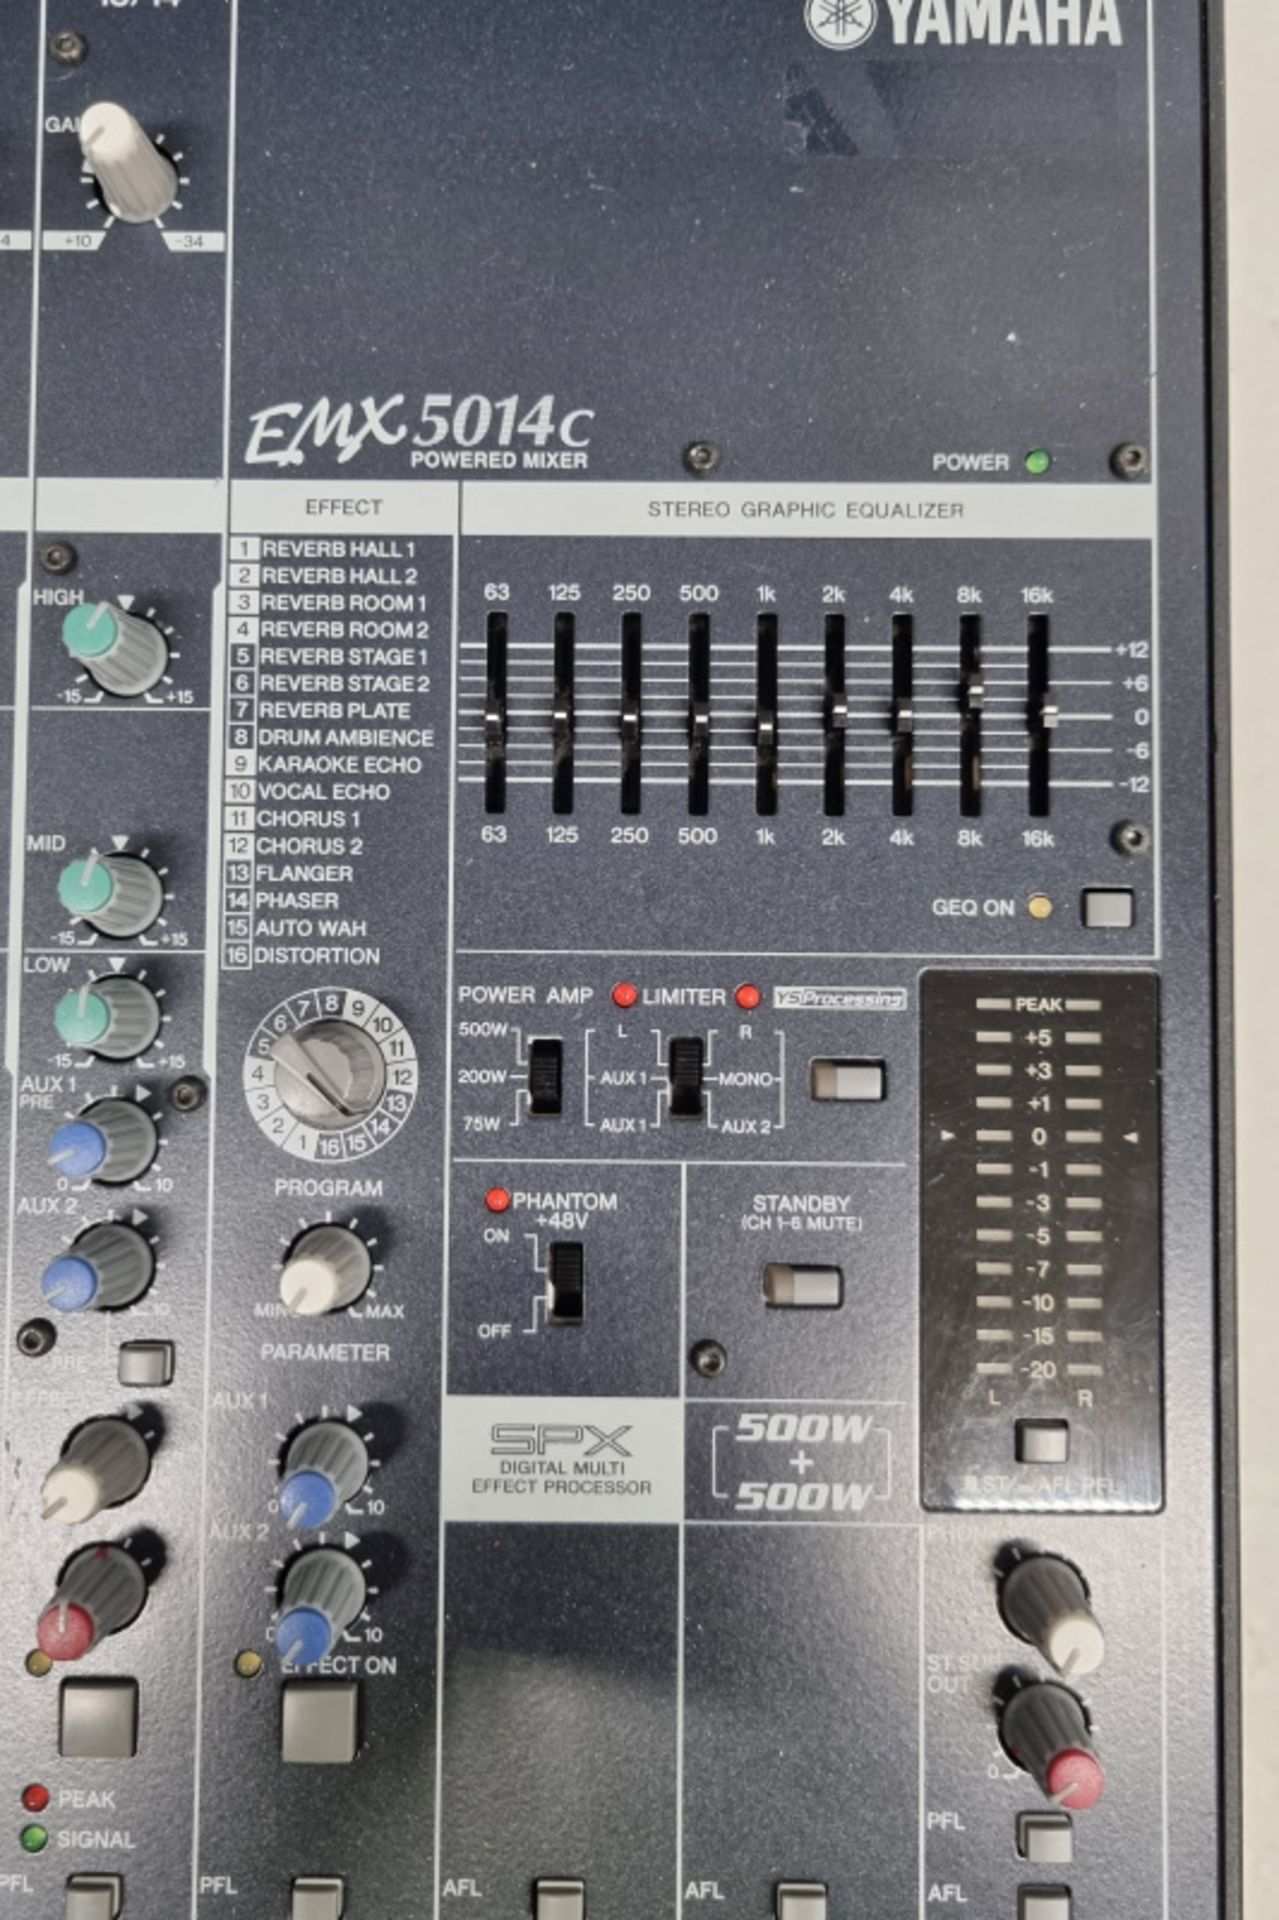 Yamaha EMX 5014C Mixer in flight case - Image 2 of 4